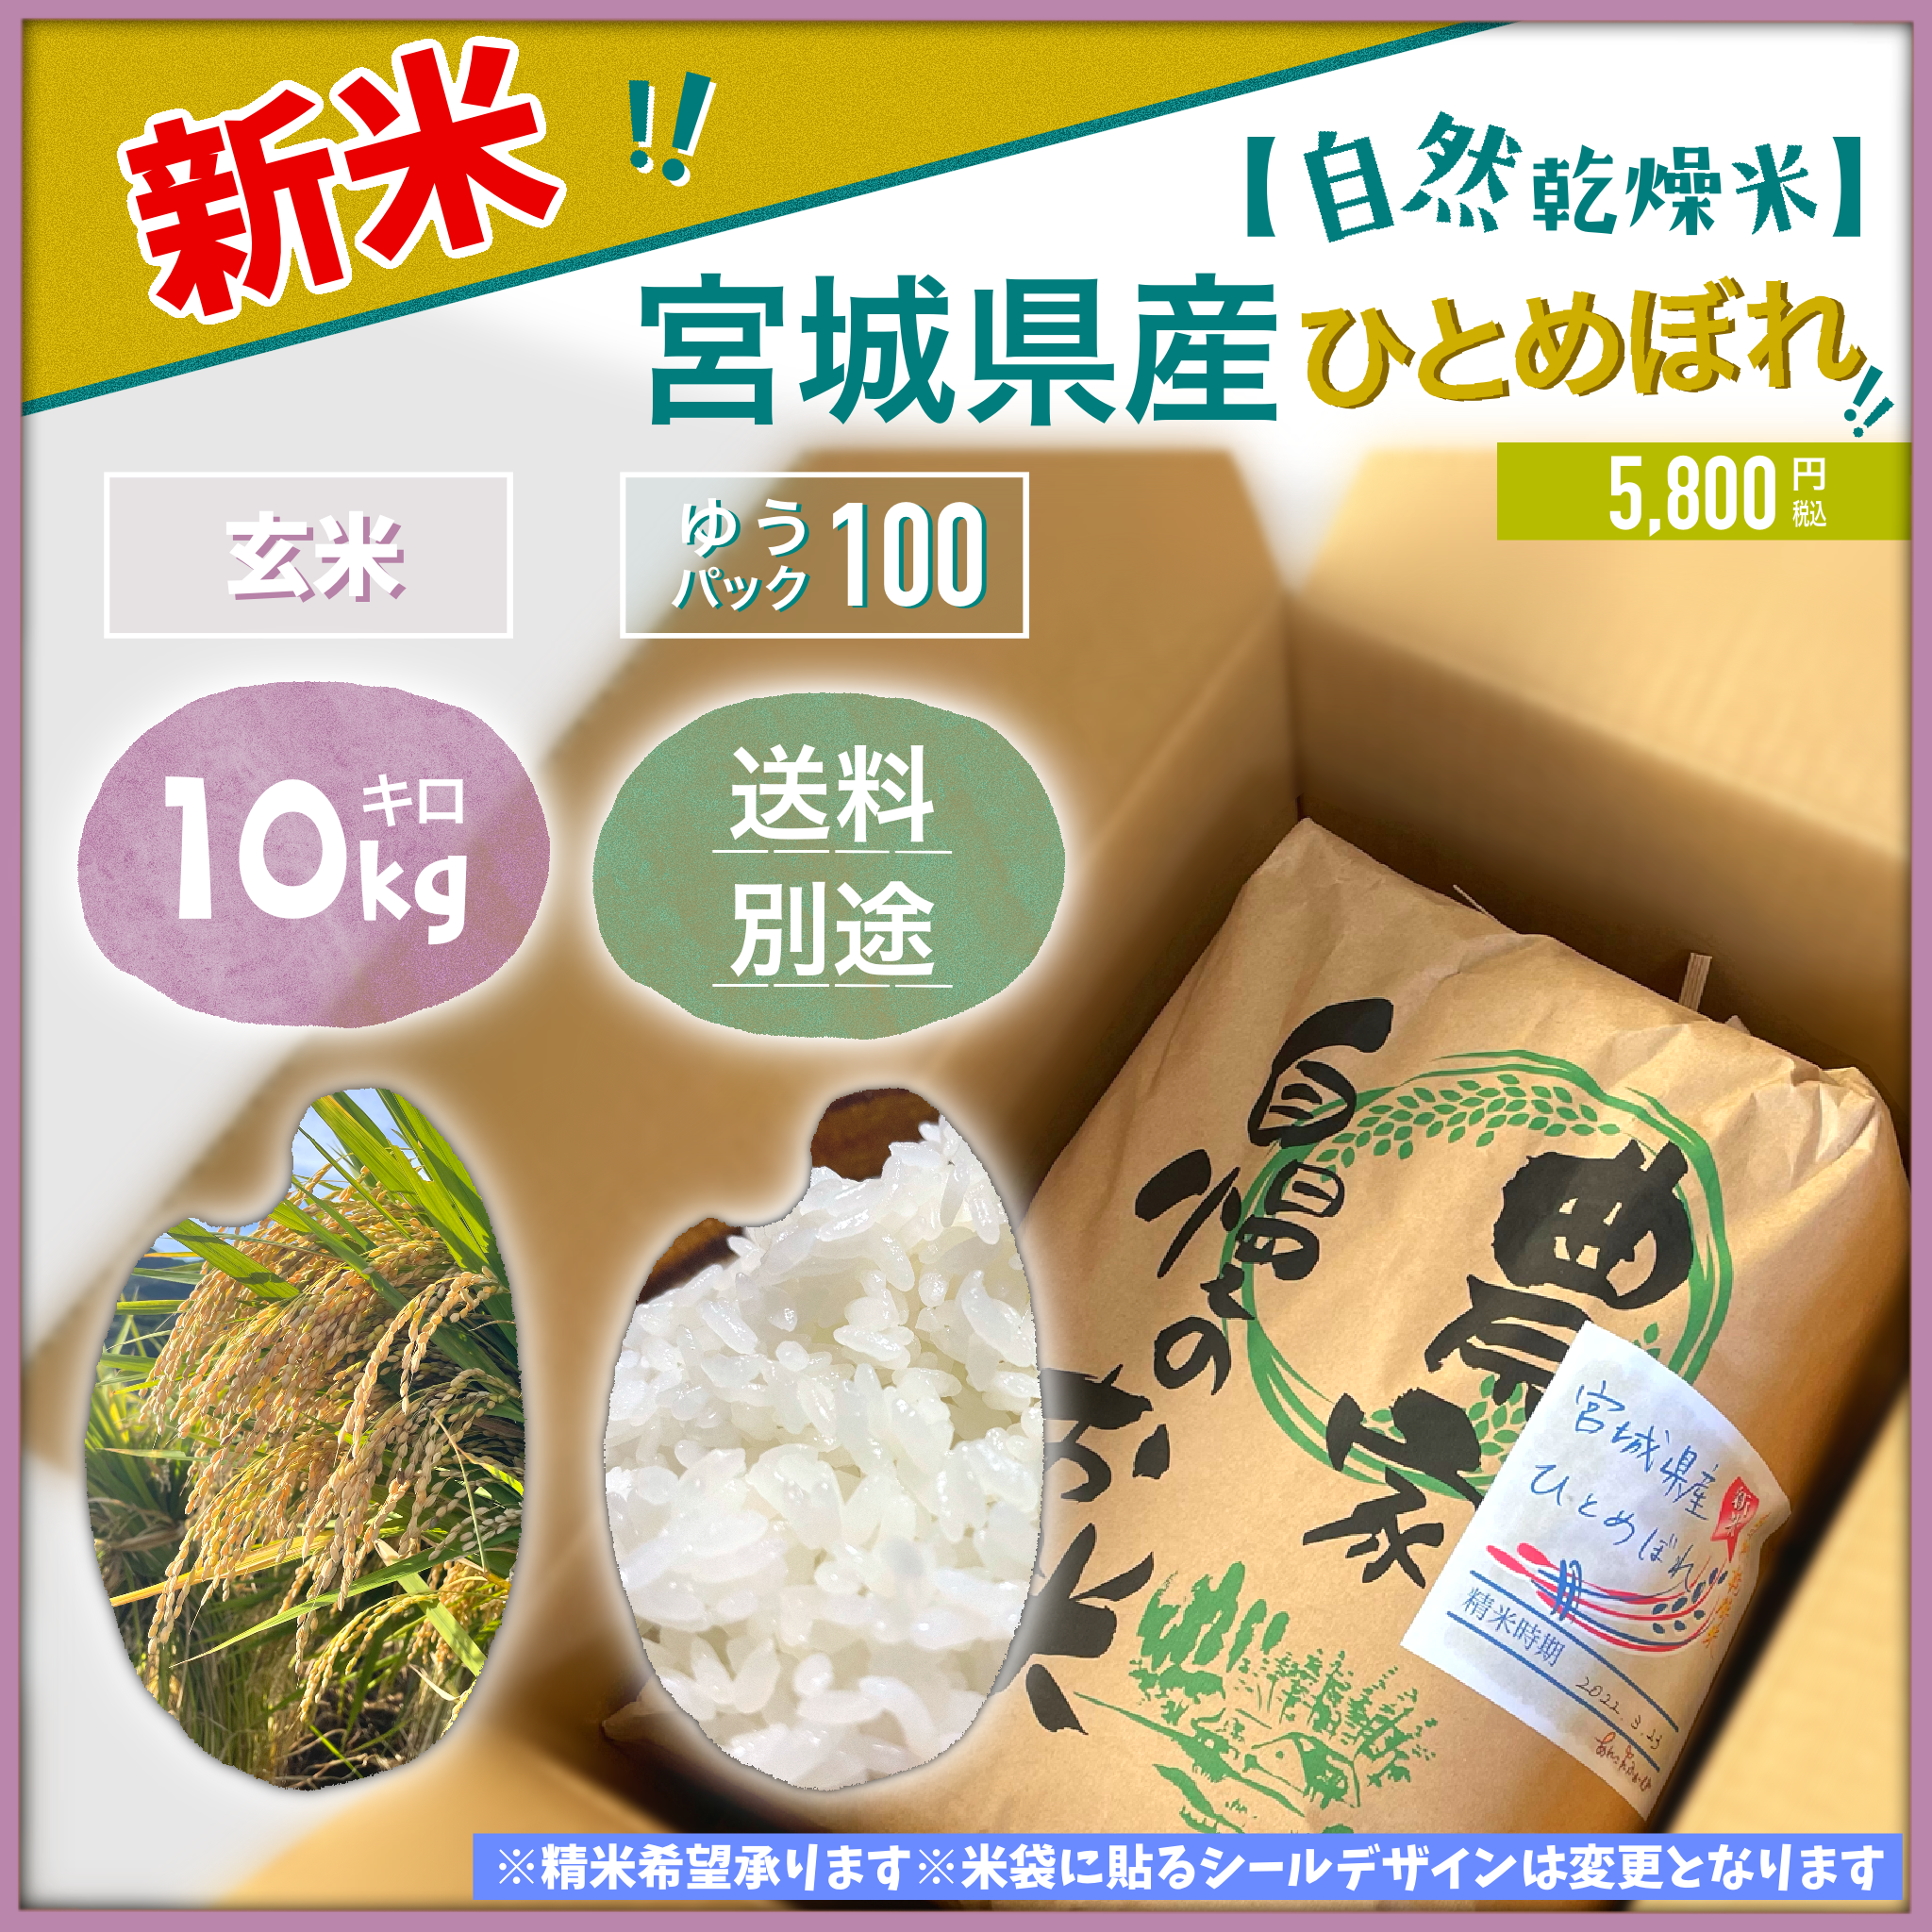 2【低農薬／有機肥料】令和3年新米、棚田のこしひかり、美味しいお米